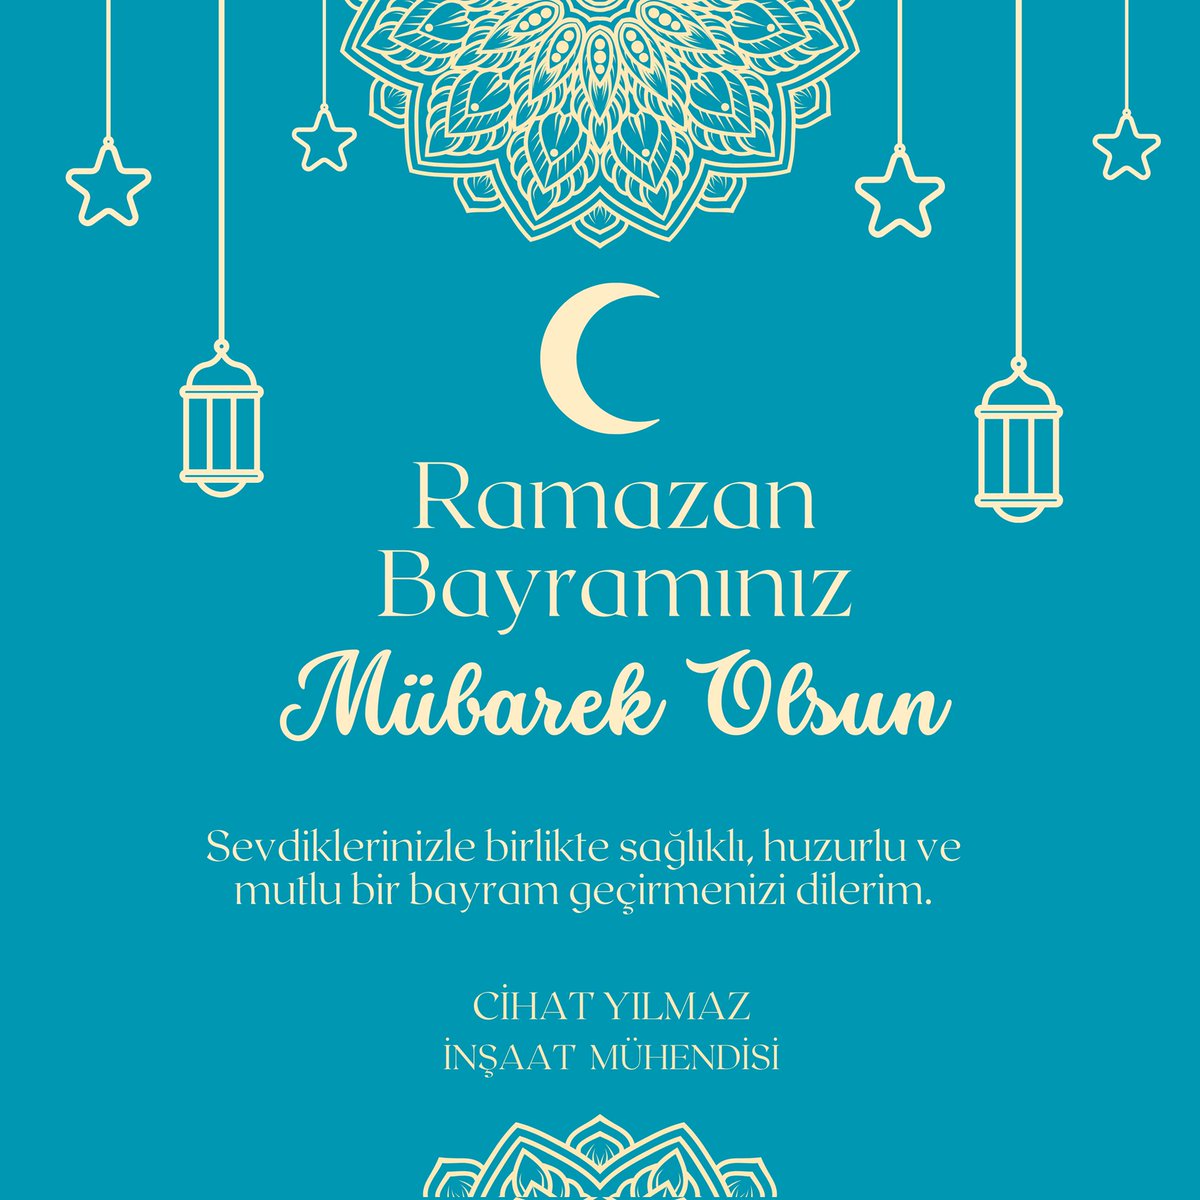 Herkesin Ramazan Bayramını kutlarım. #MutluBayramlar